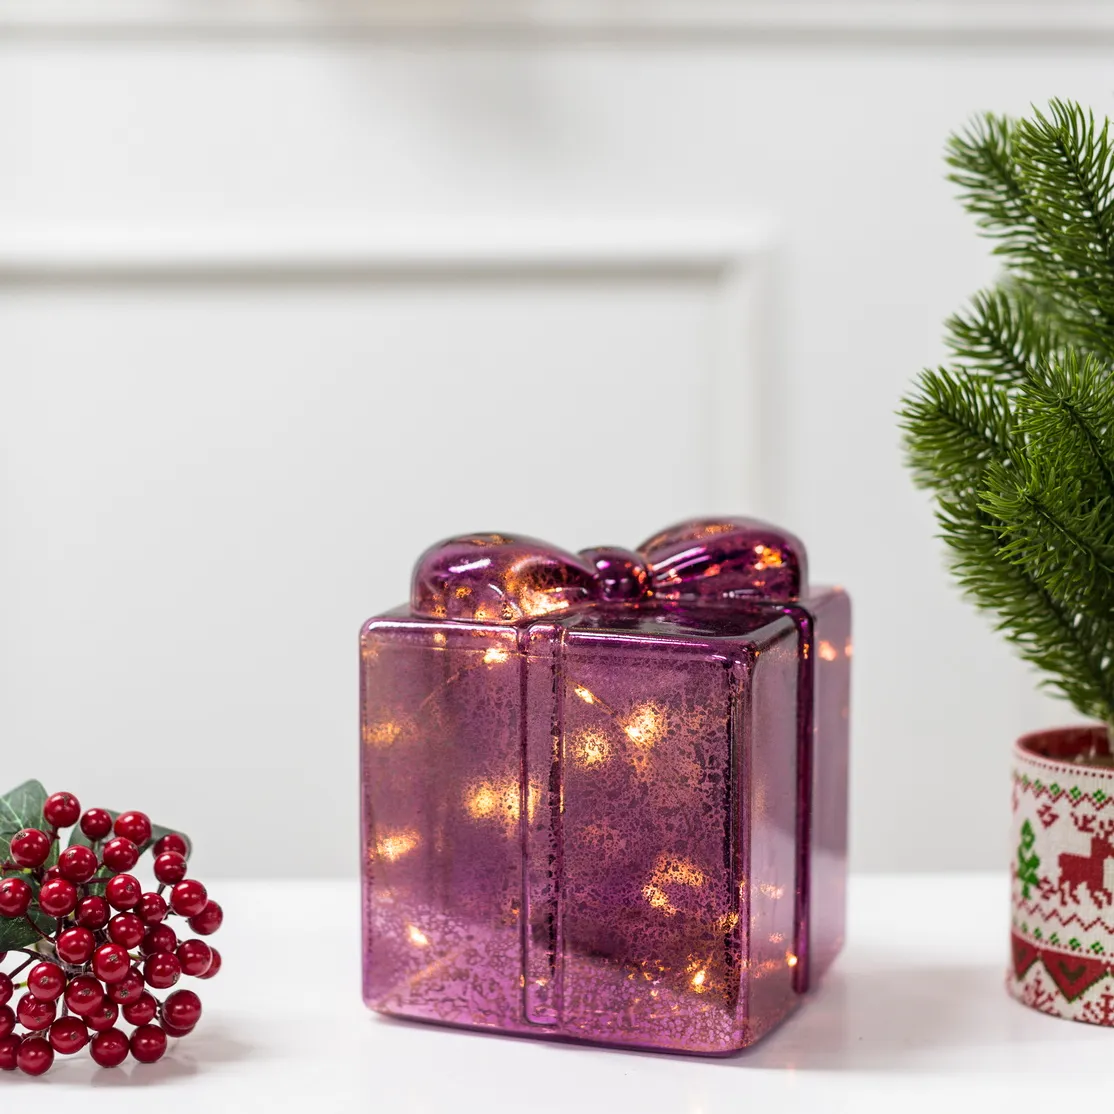 Nuova scatola regalo di vetro per interni alimentati a batteria luci natalizie con mini led bianchi caldi all'interno per la decorazione natalizia